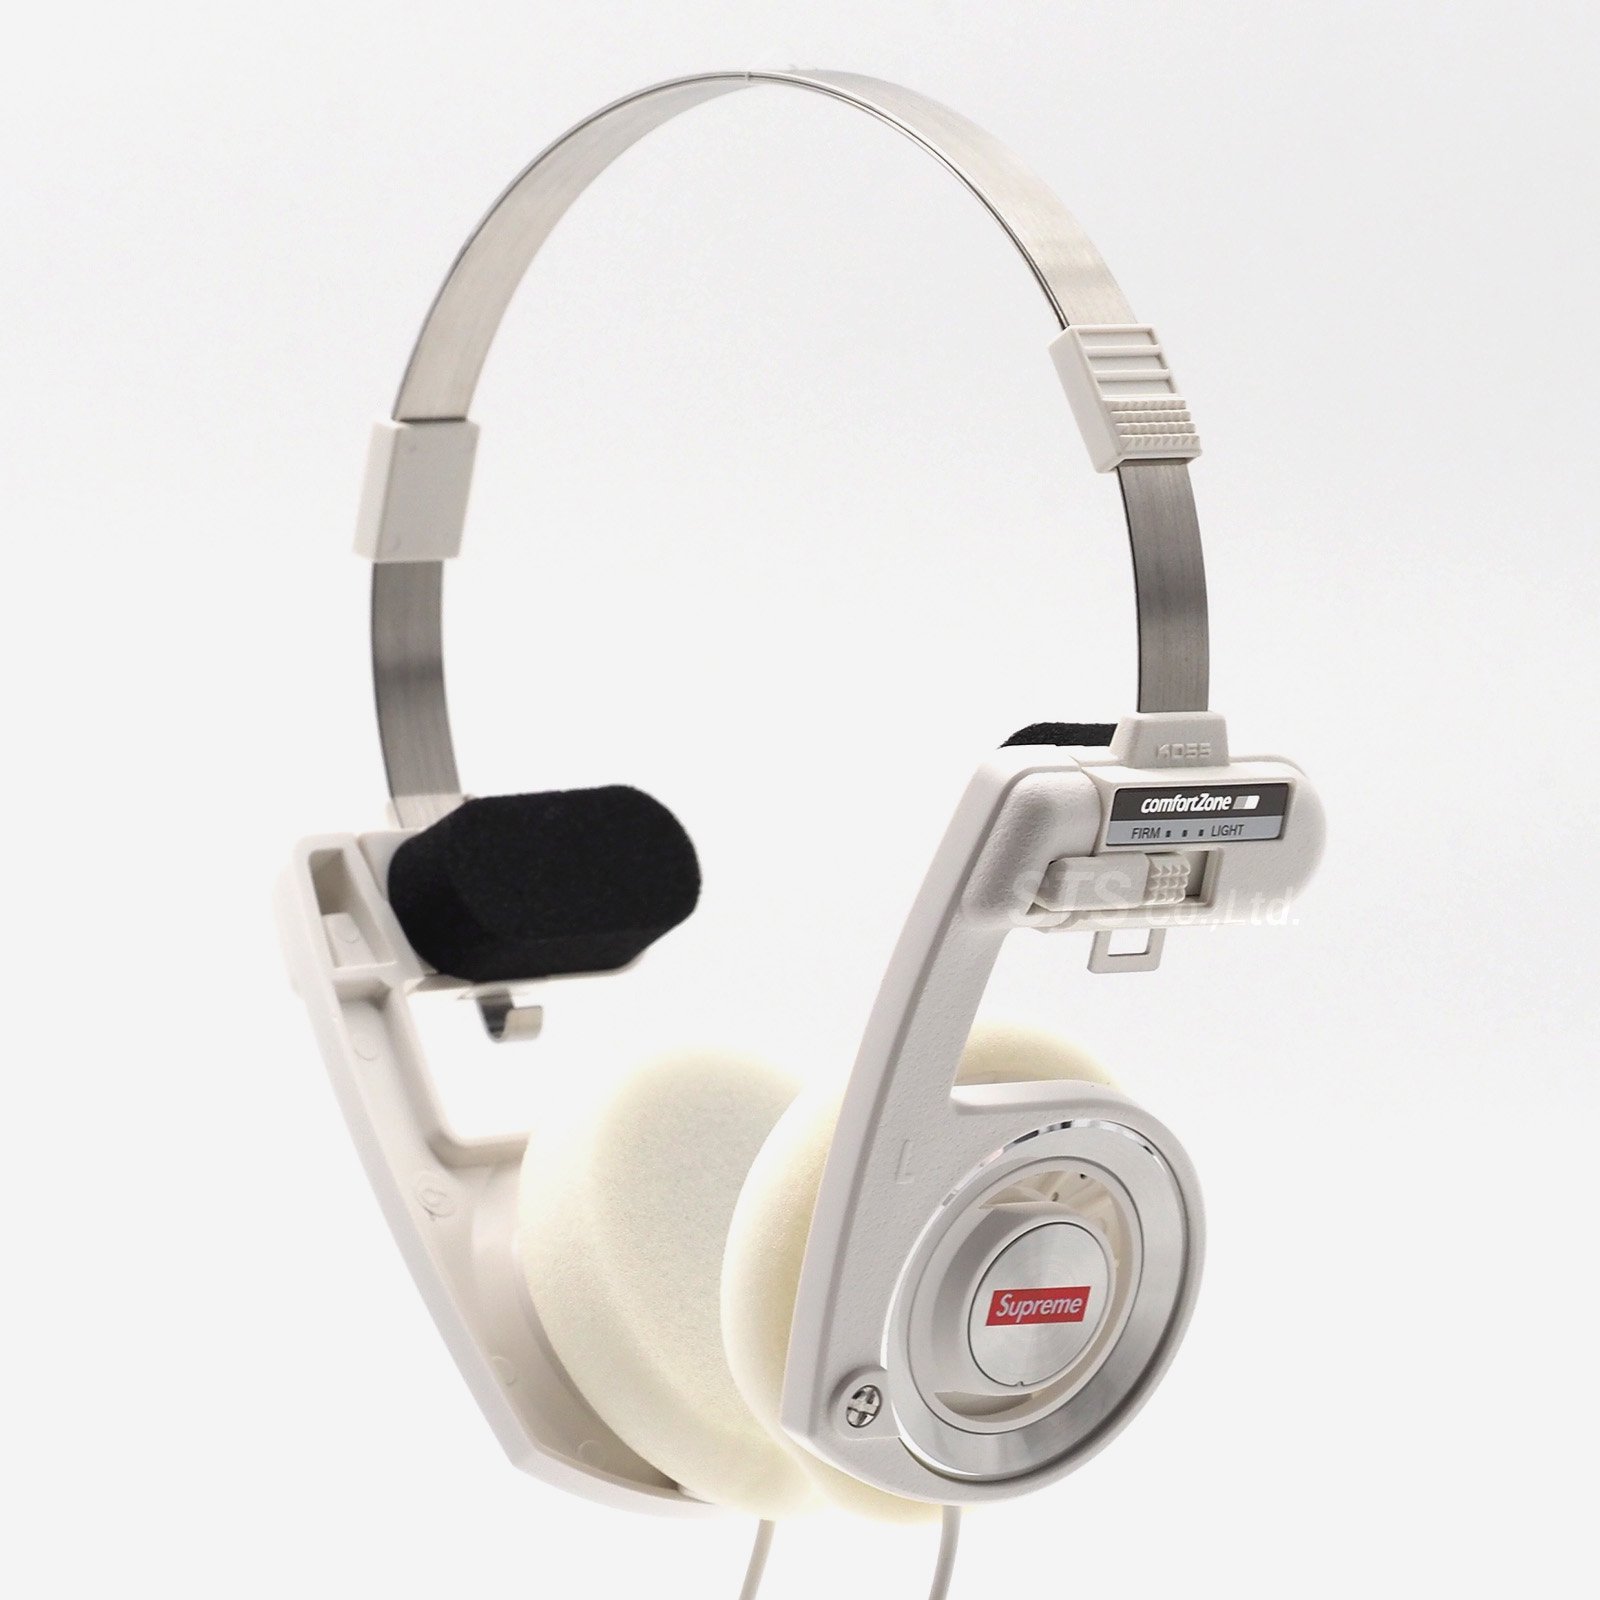 人気絶頂 ヘッドホン Headphones PortaPro Koss / Supreme ヘッドホン 